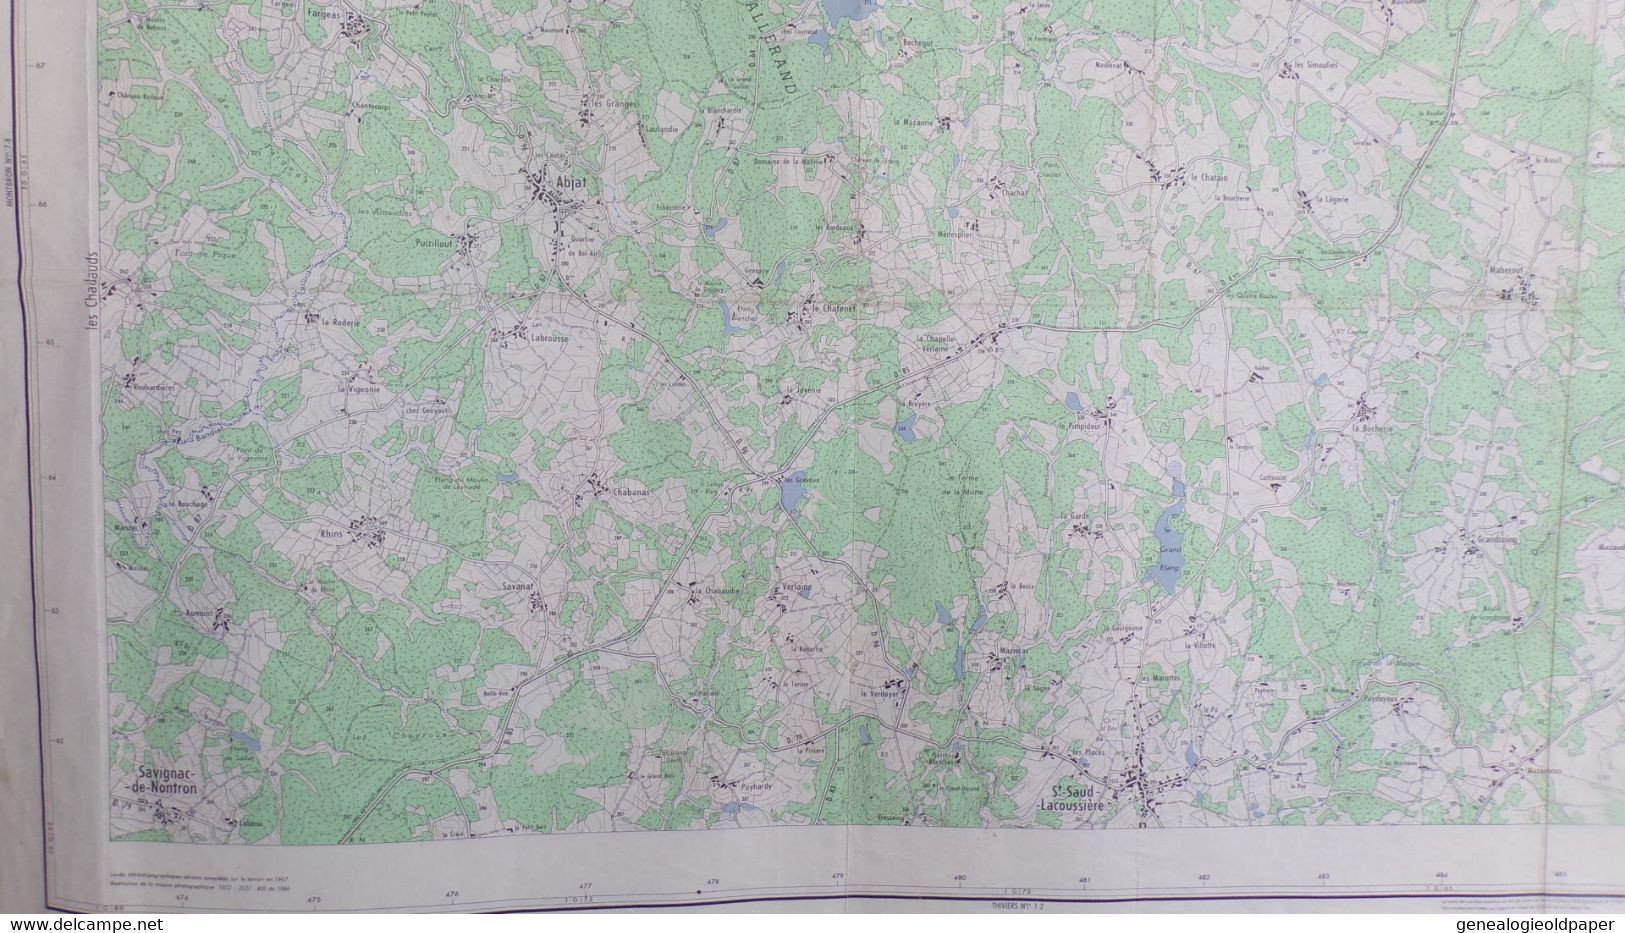 87-CHALUS-CARTE GEOGRAPHIQUE 1967-PENSOL-ABJAT-MARVAL-ST SAINT SAUD LACOUSSIERE-GRANDCOING-FARGEAS-DAVIGNAC NONTRON - Mapas Topográficas